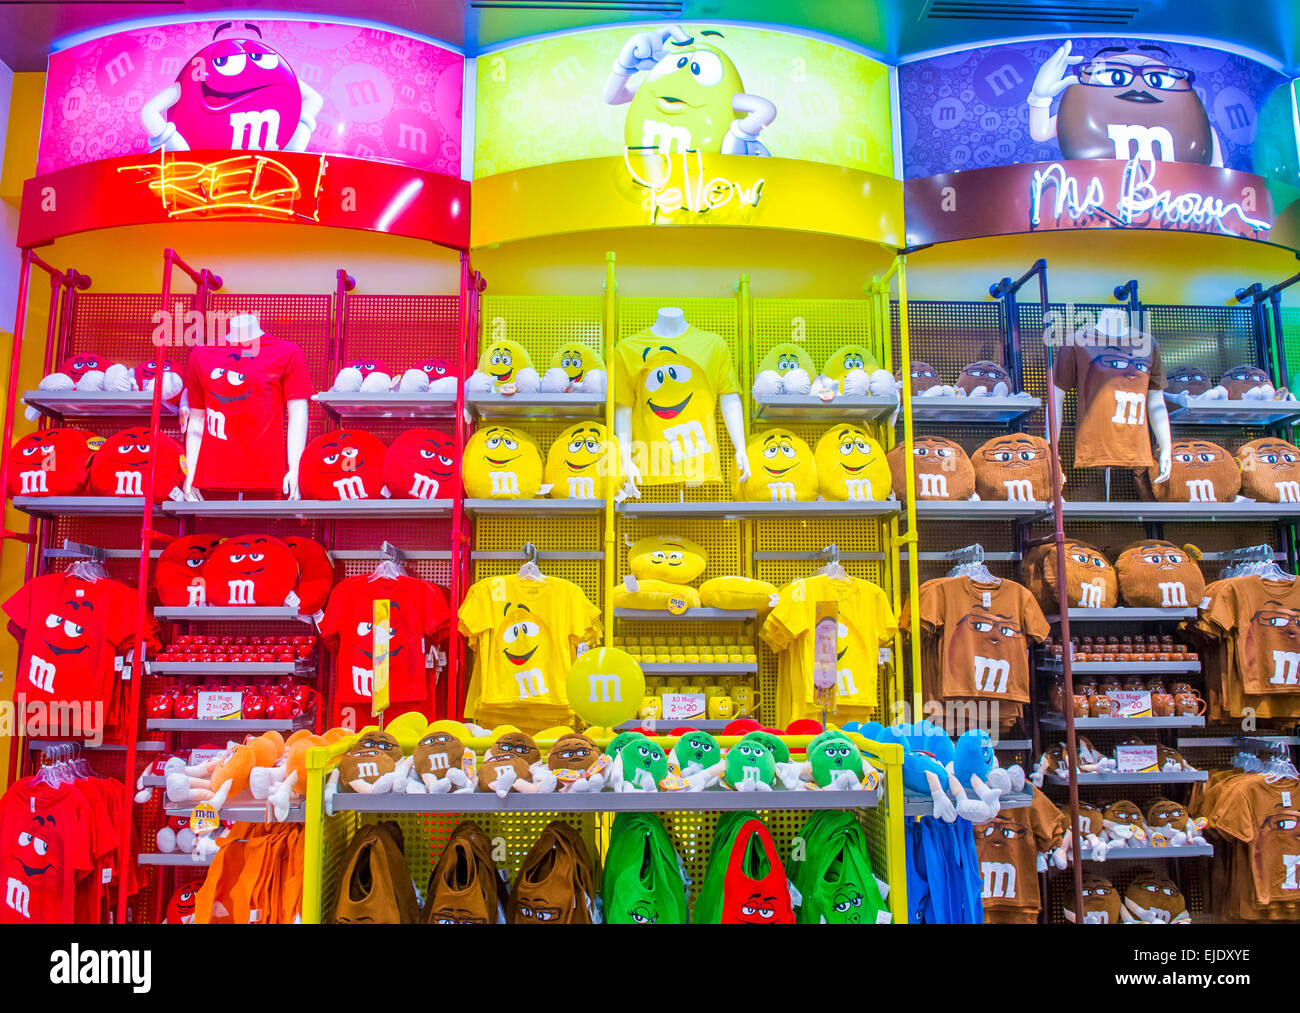 El M&M World store en el strip de Las Vegas Fotografía de stock - Alamy